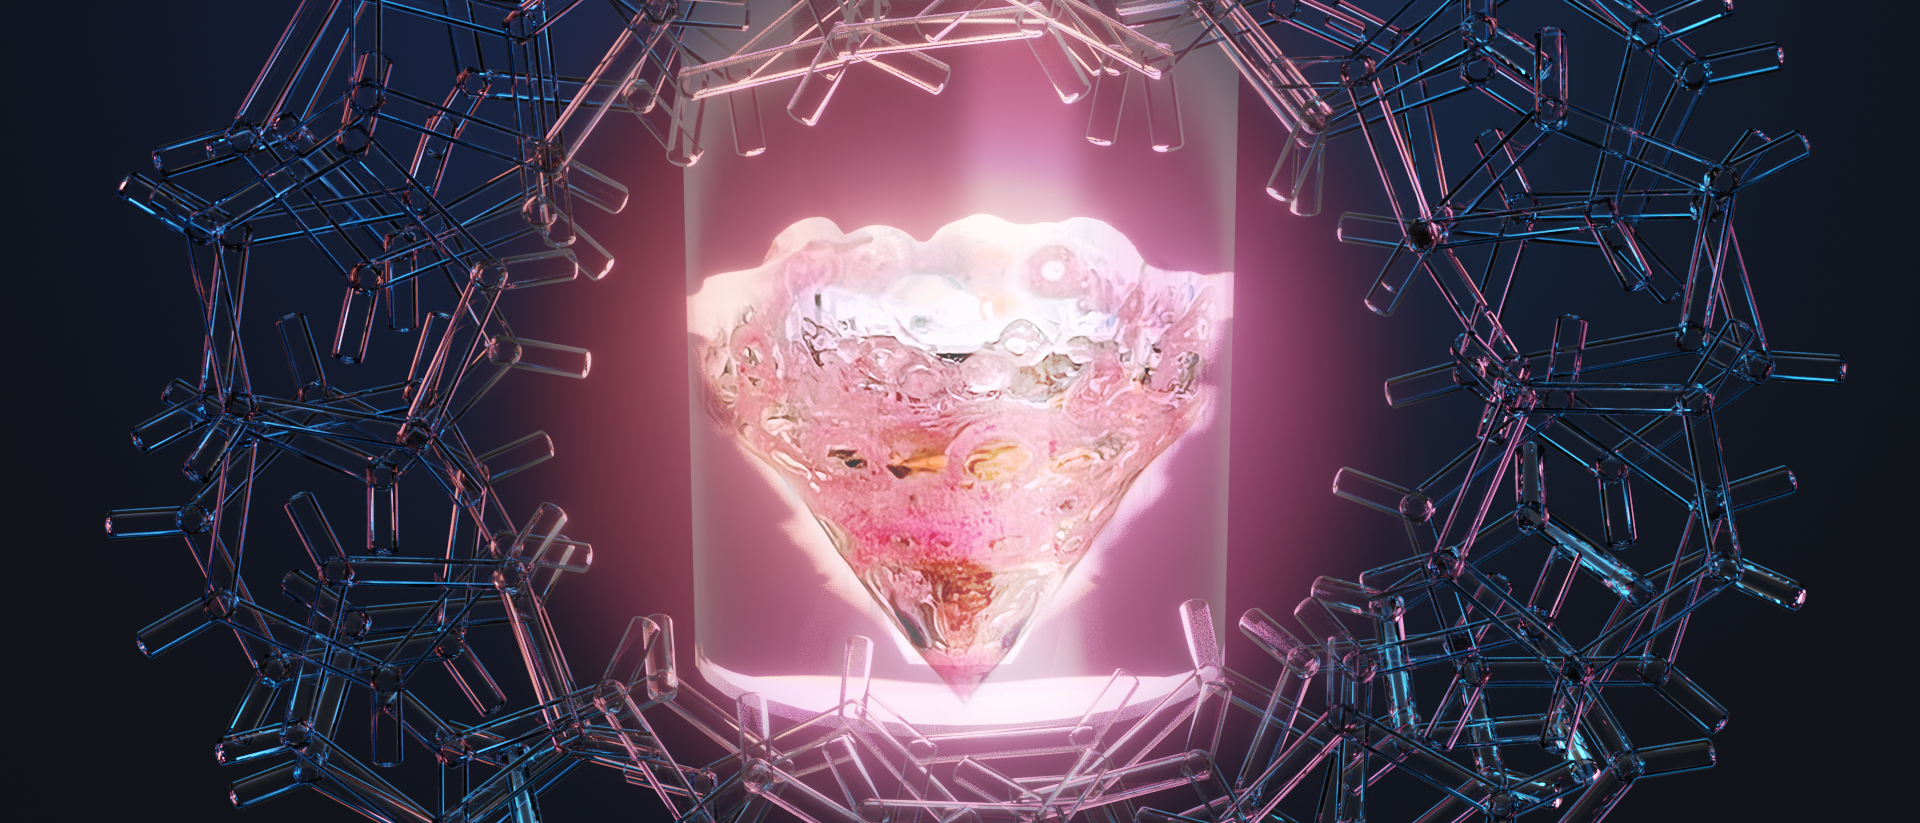 eine künstlerische Darstellung zeigt einen rosa leuchtenden Kristall, umgeben von abstrakten Molekülen auf schwarzem Hintergrund